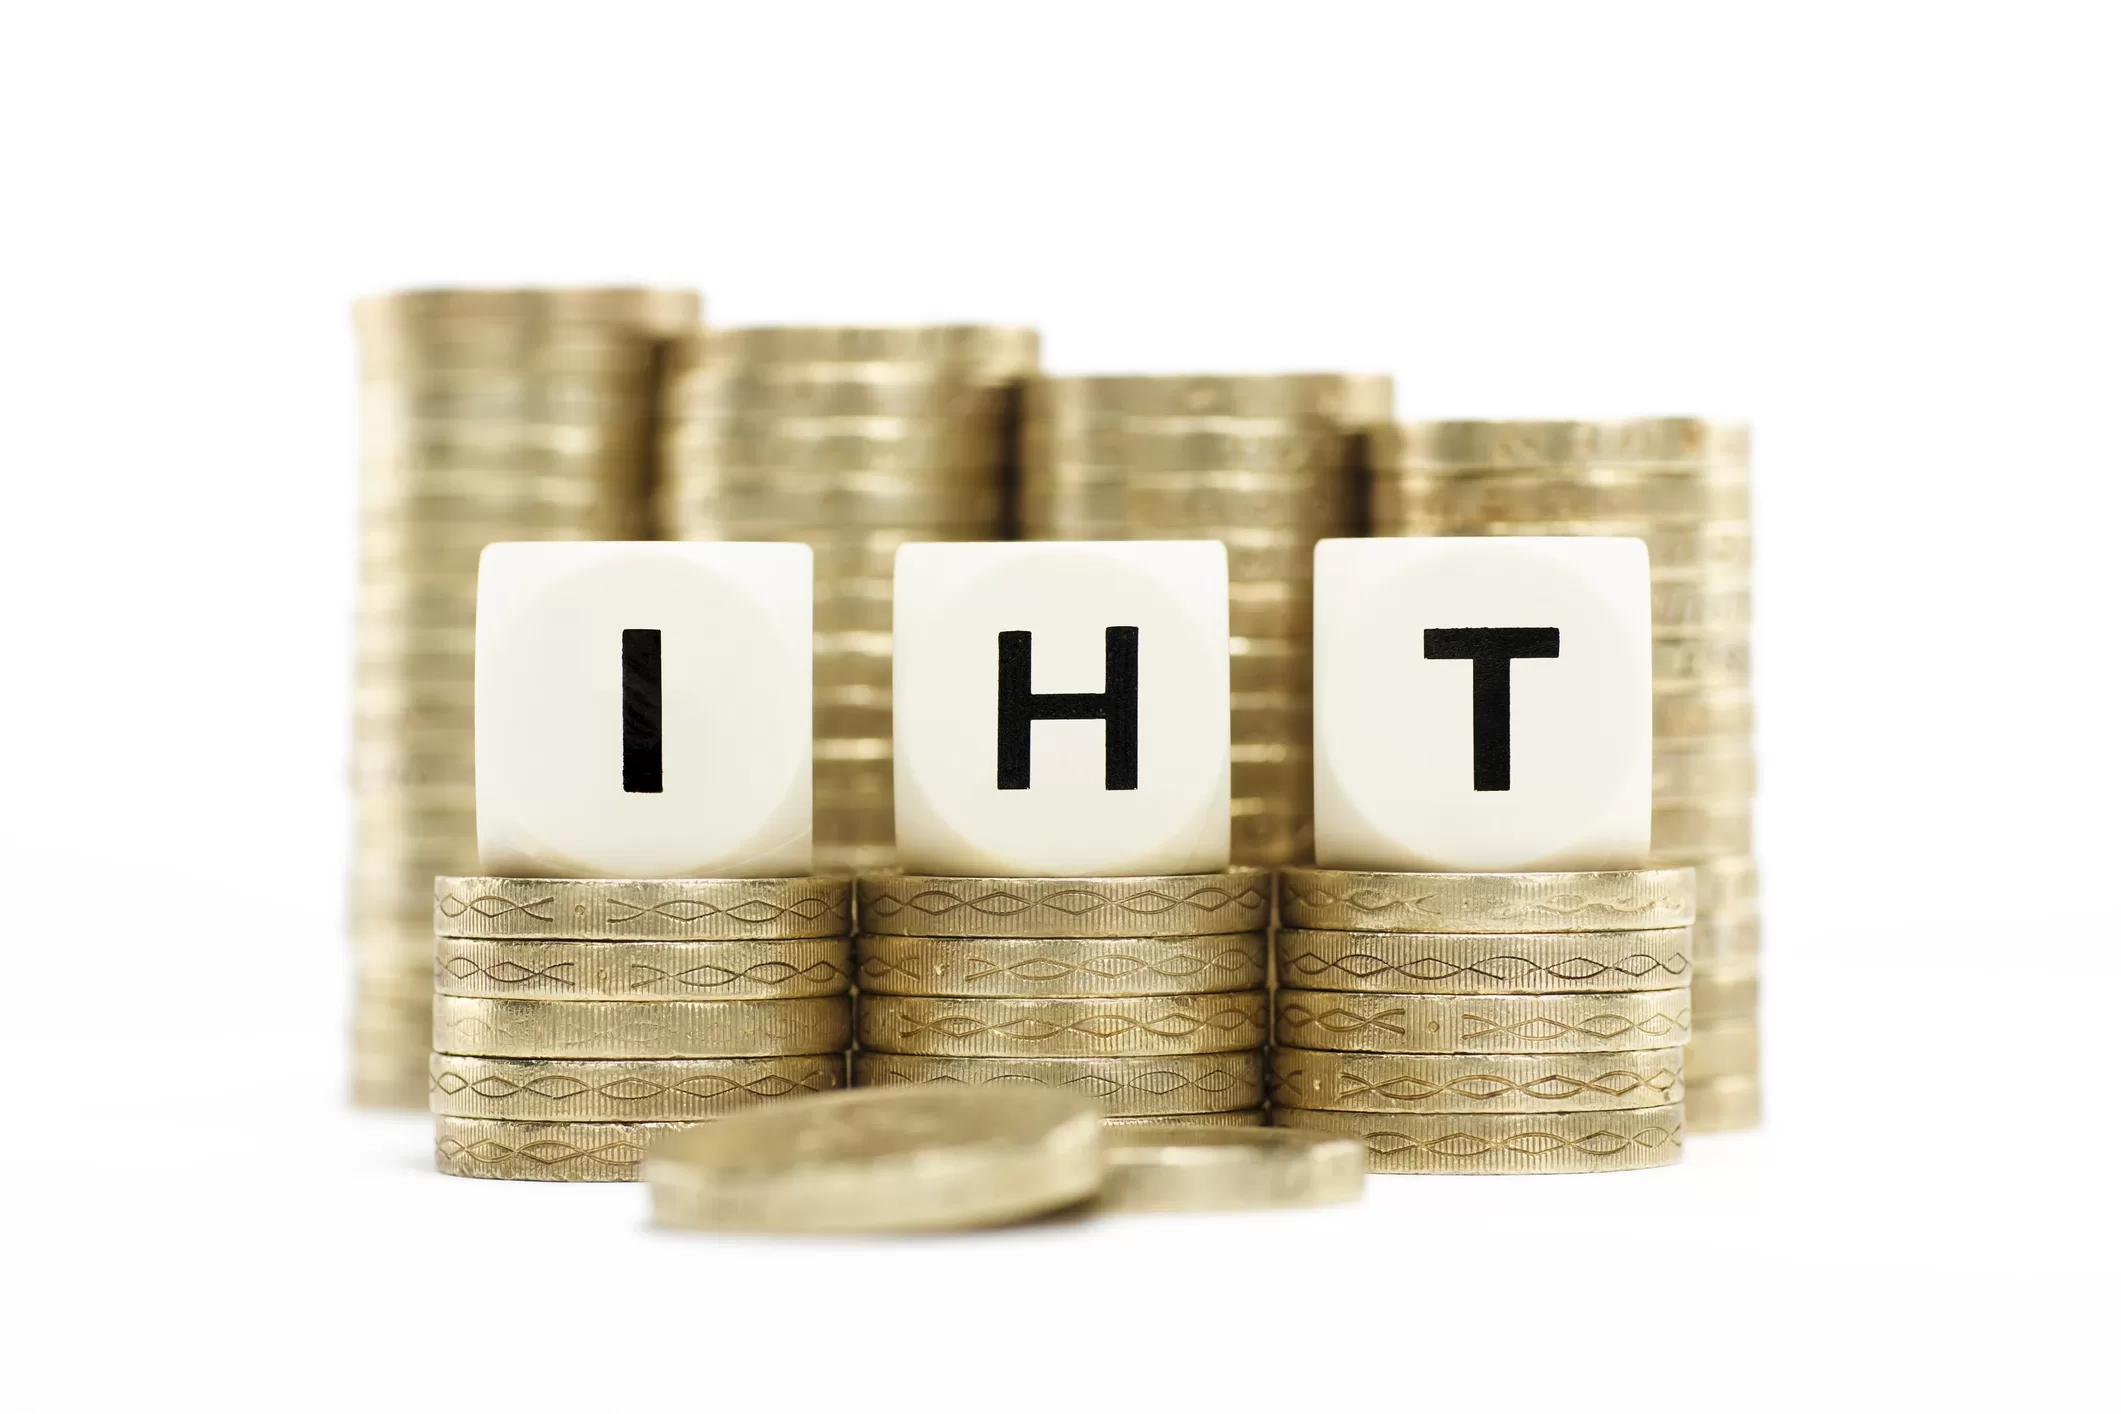 IHT coins